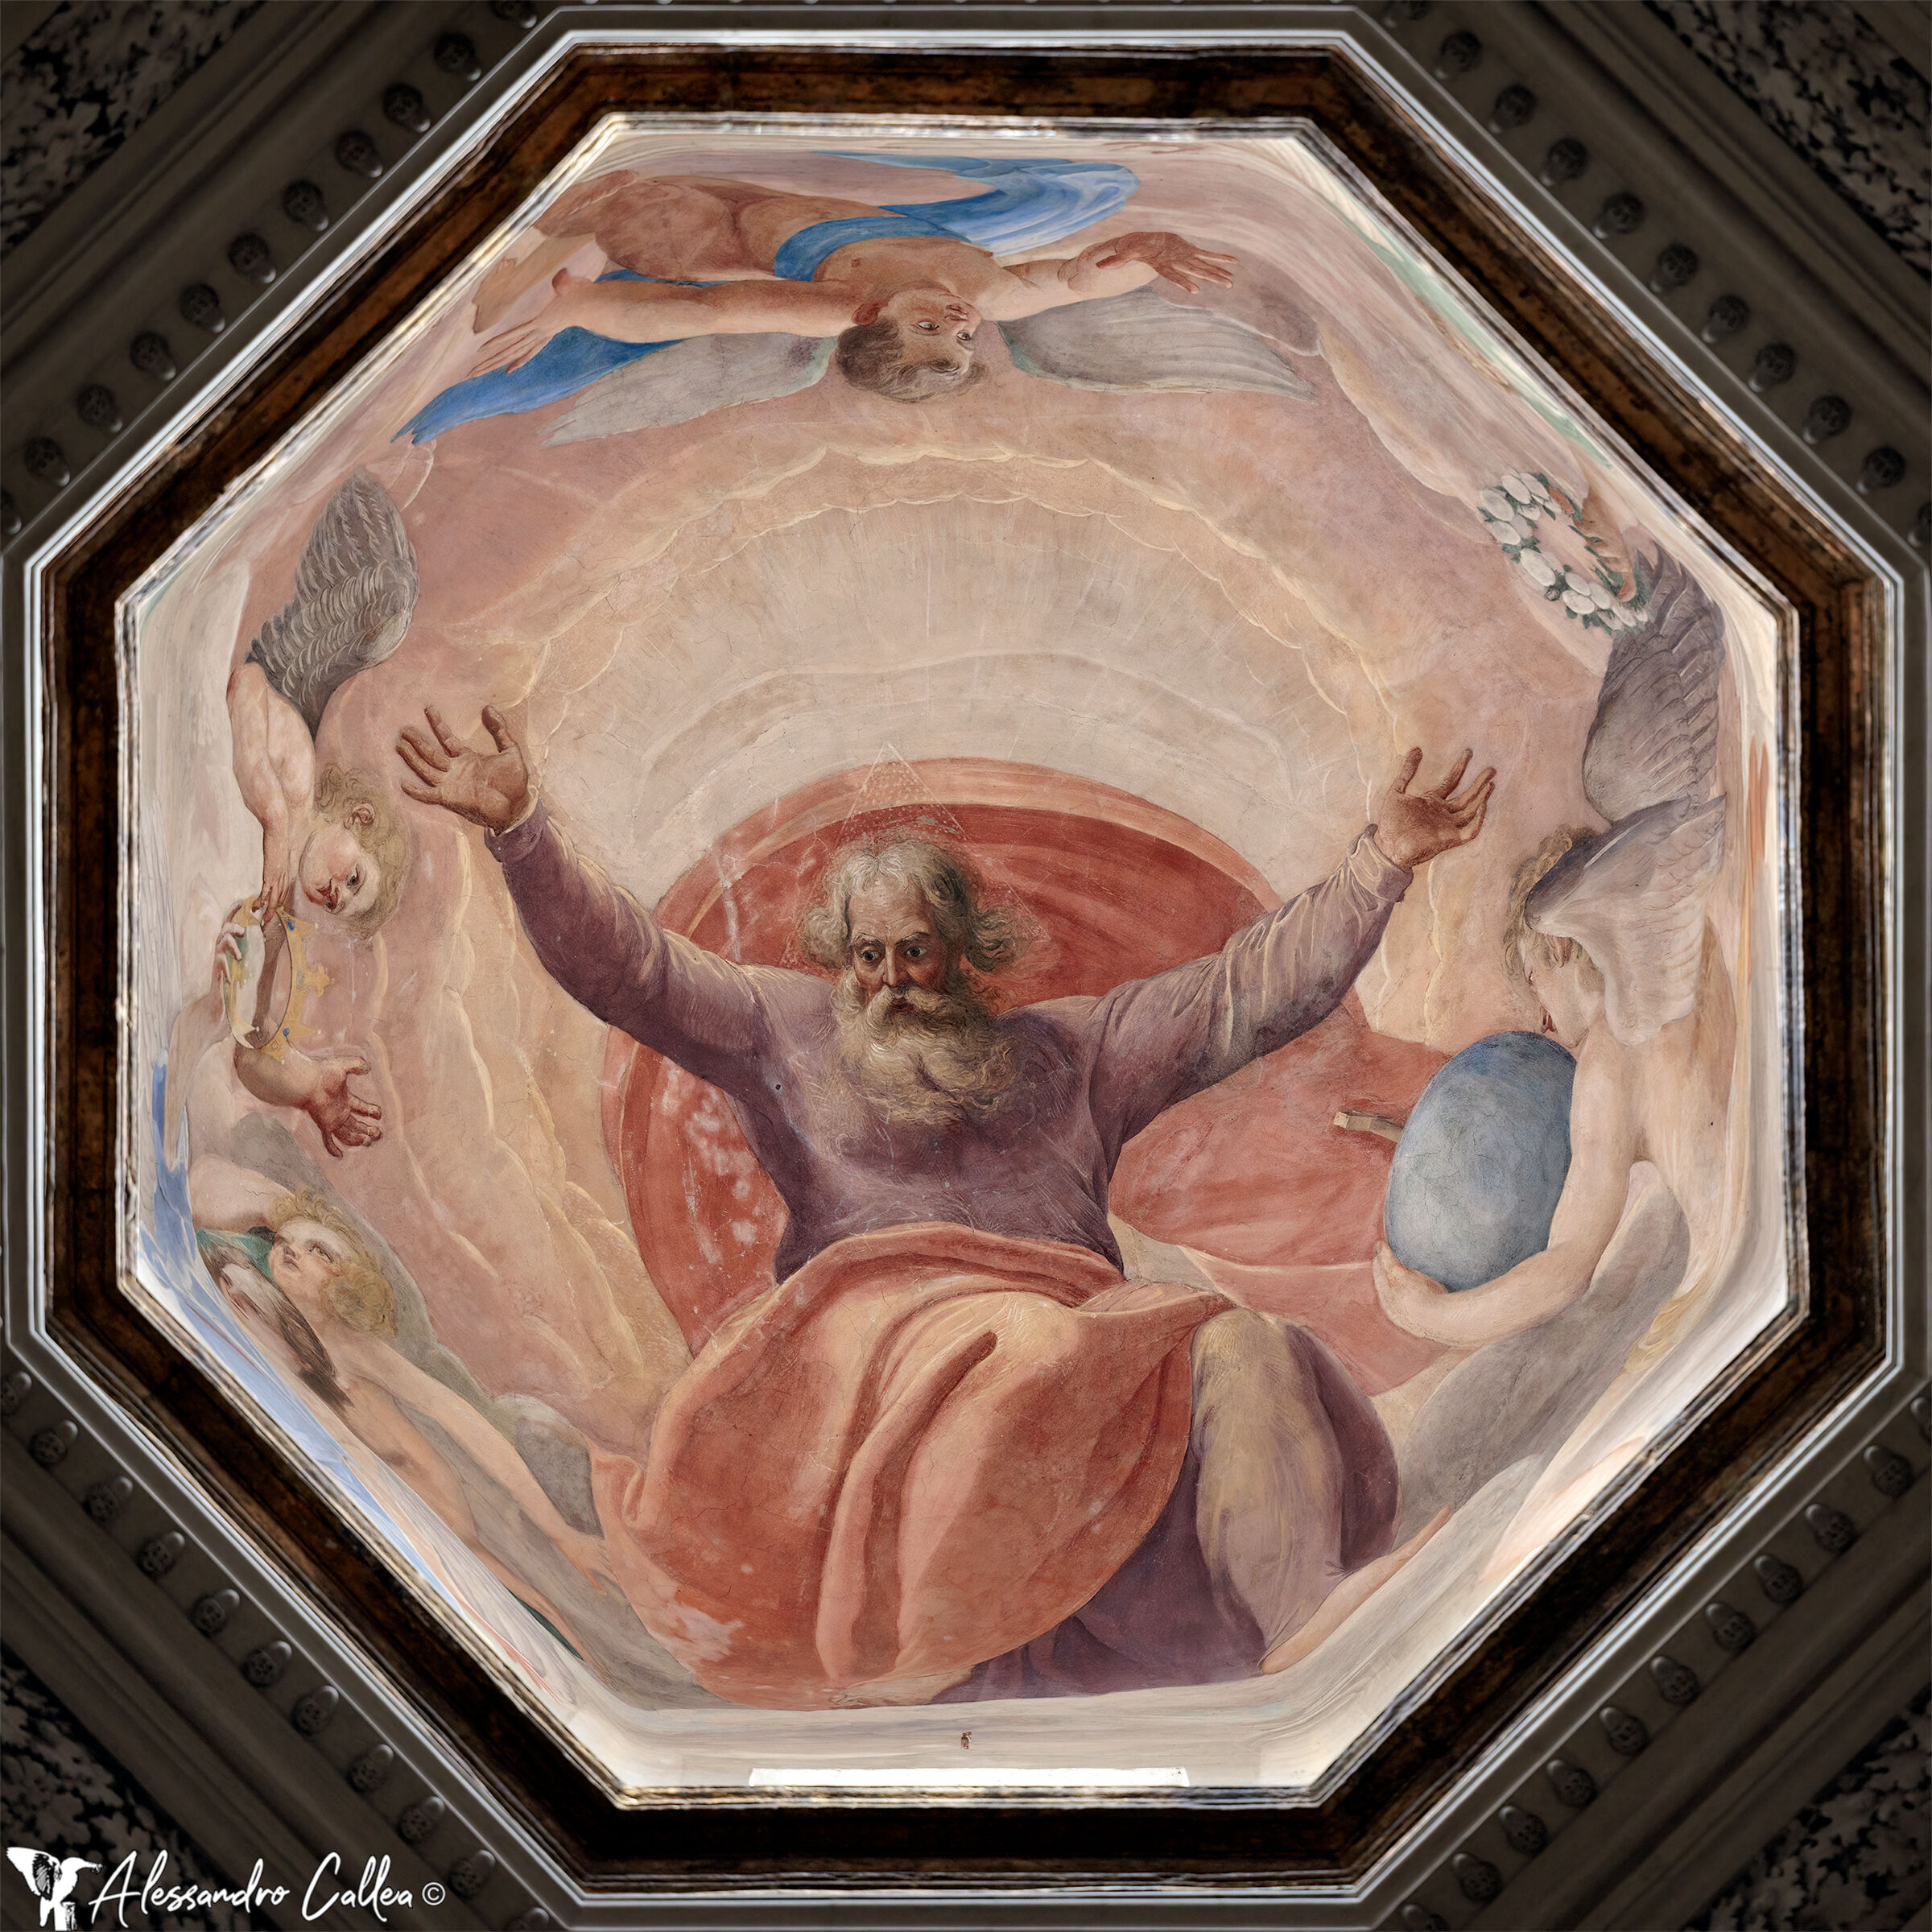 Dome of the Church of Santa Maria della Pace (Rome)...